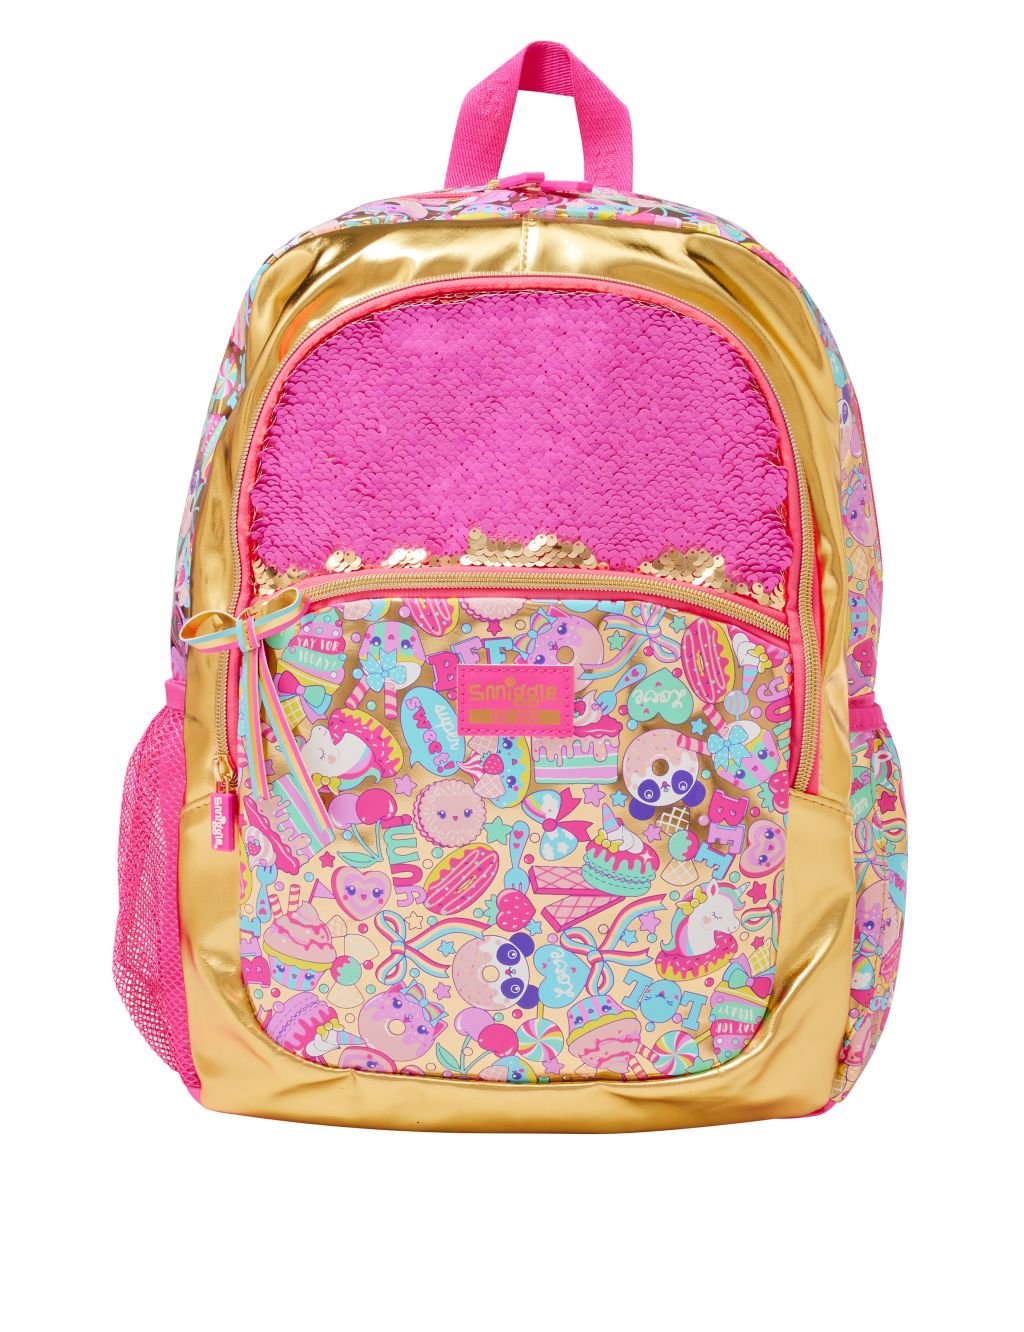 Kids' Patterned Backpack image 4